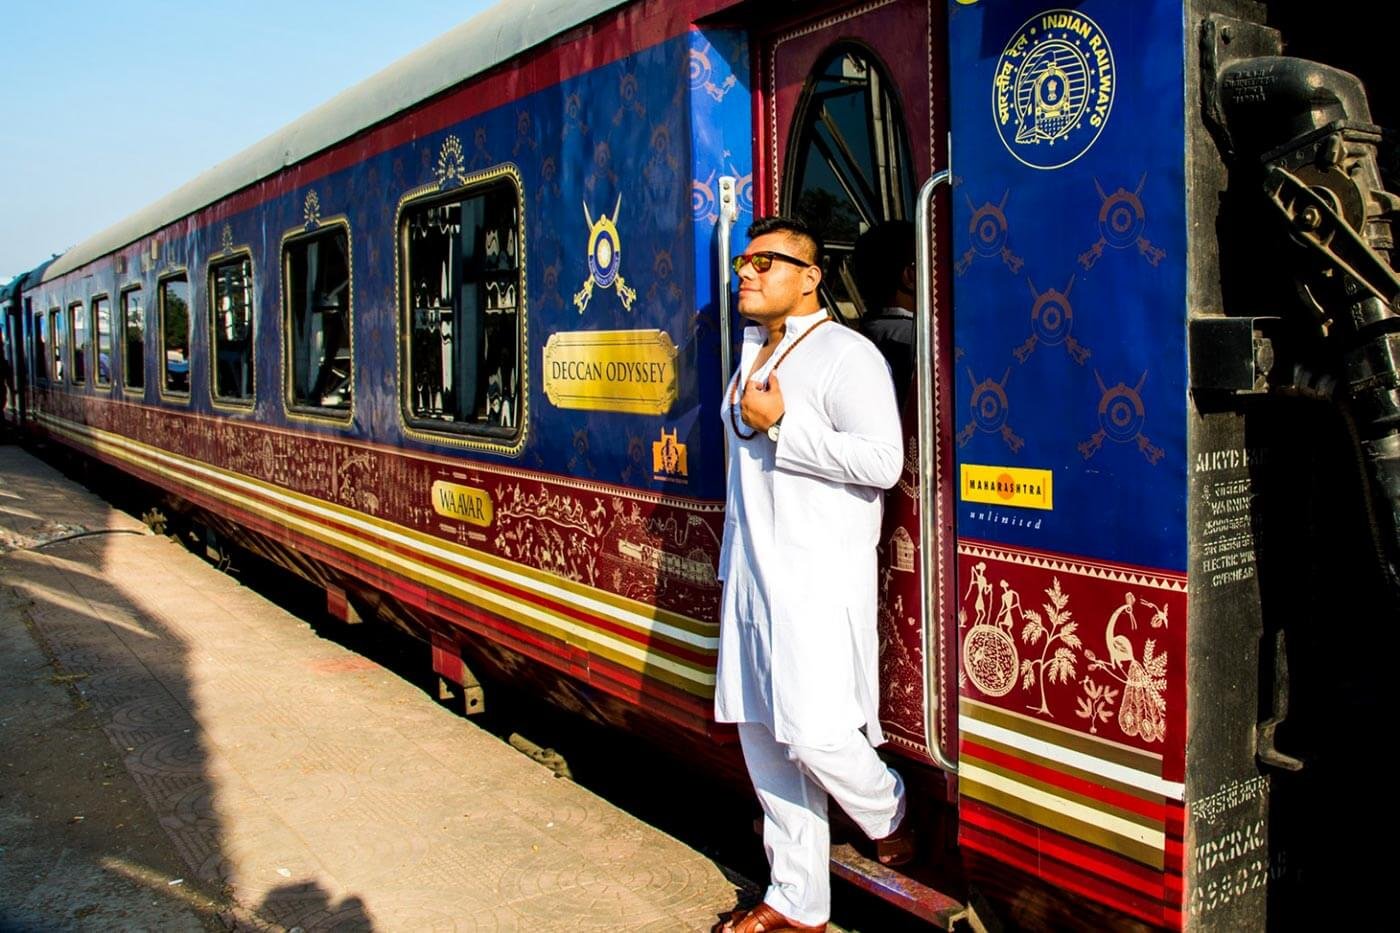 Пребывающий поезд. Поезд Deccan Odyssey. Deccan Odyssey Luxury Train. Поезд Махараджи в Индии. Поезд Махараджа экспресс индийский.